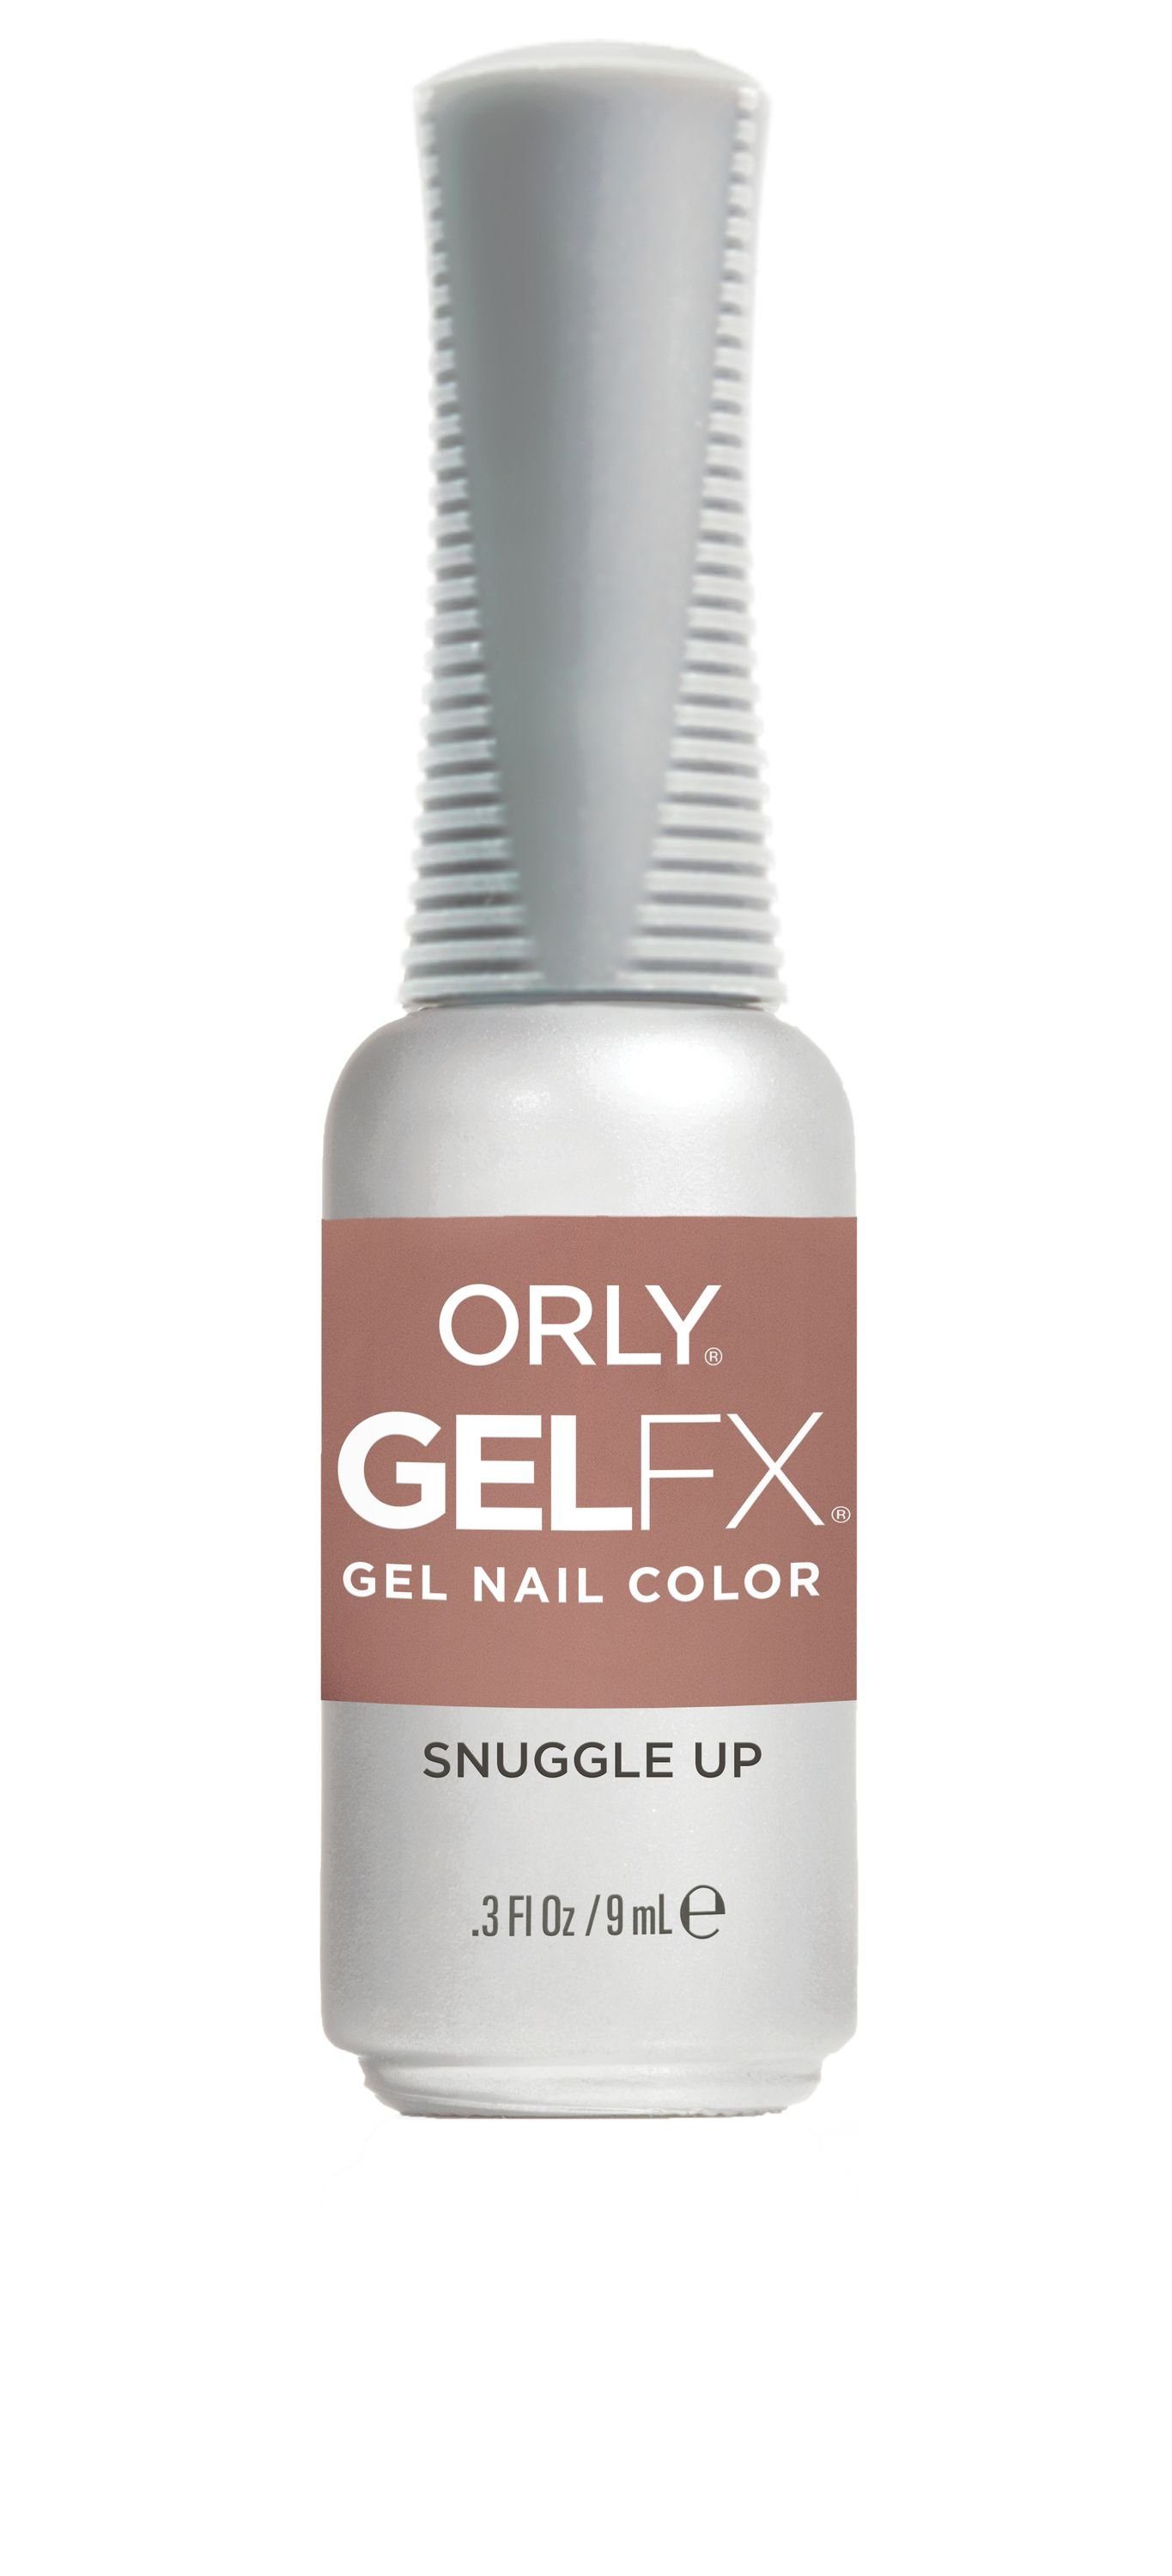 ORLY UV-Nagellack GEL FX Snuggled Up, 9ML | Nagellacke